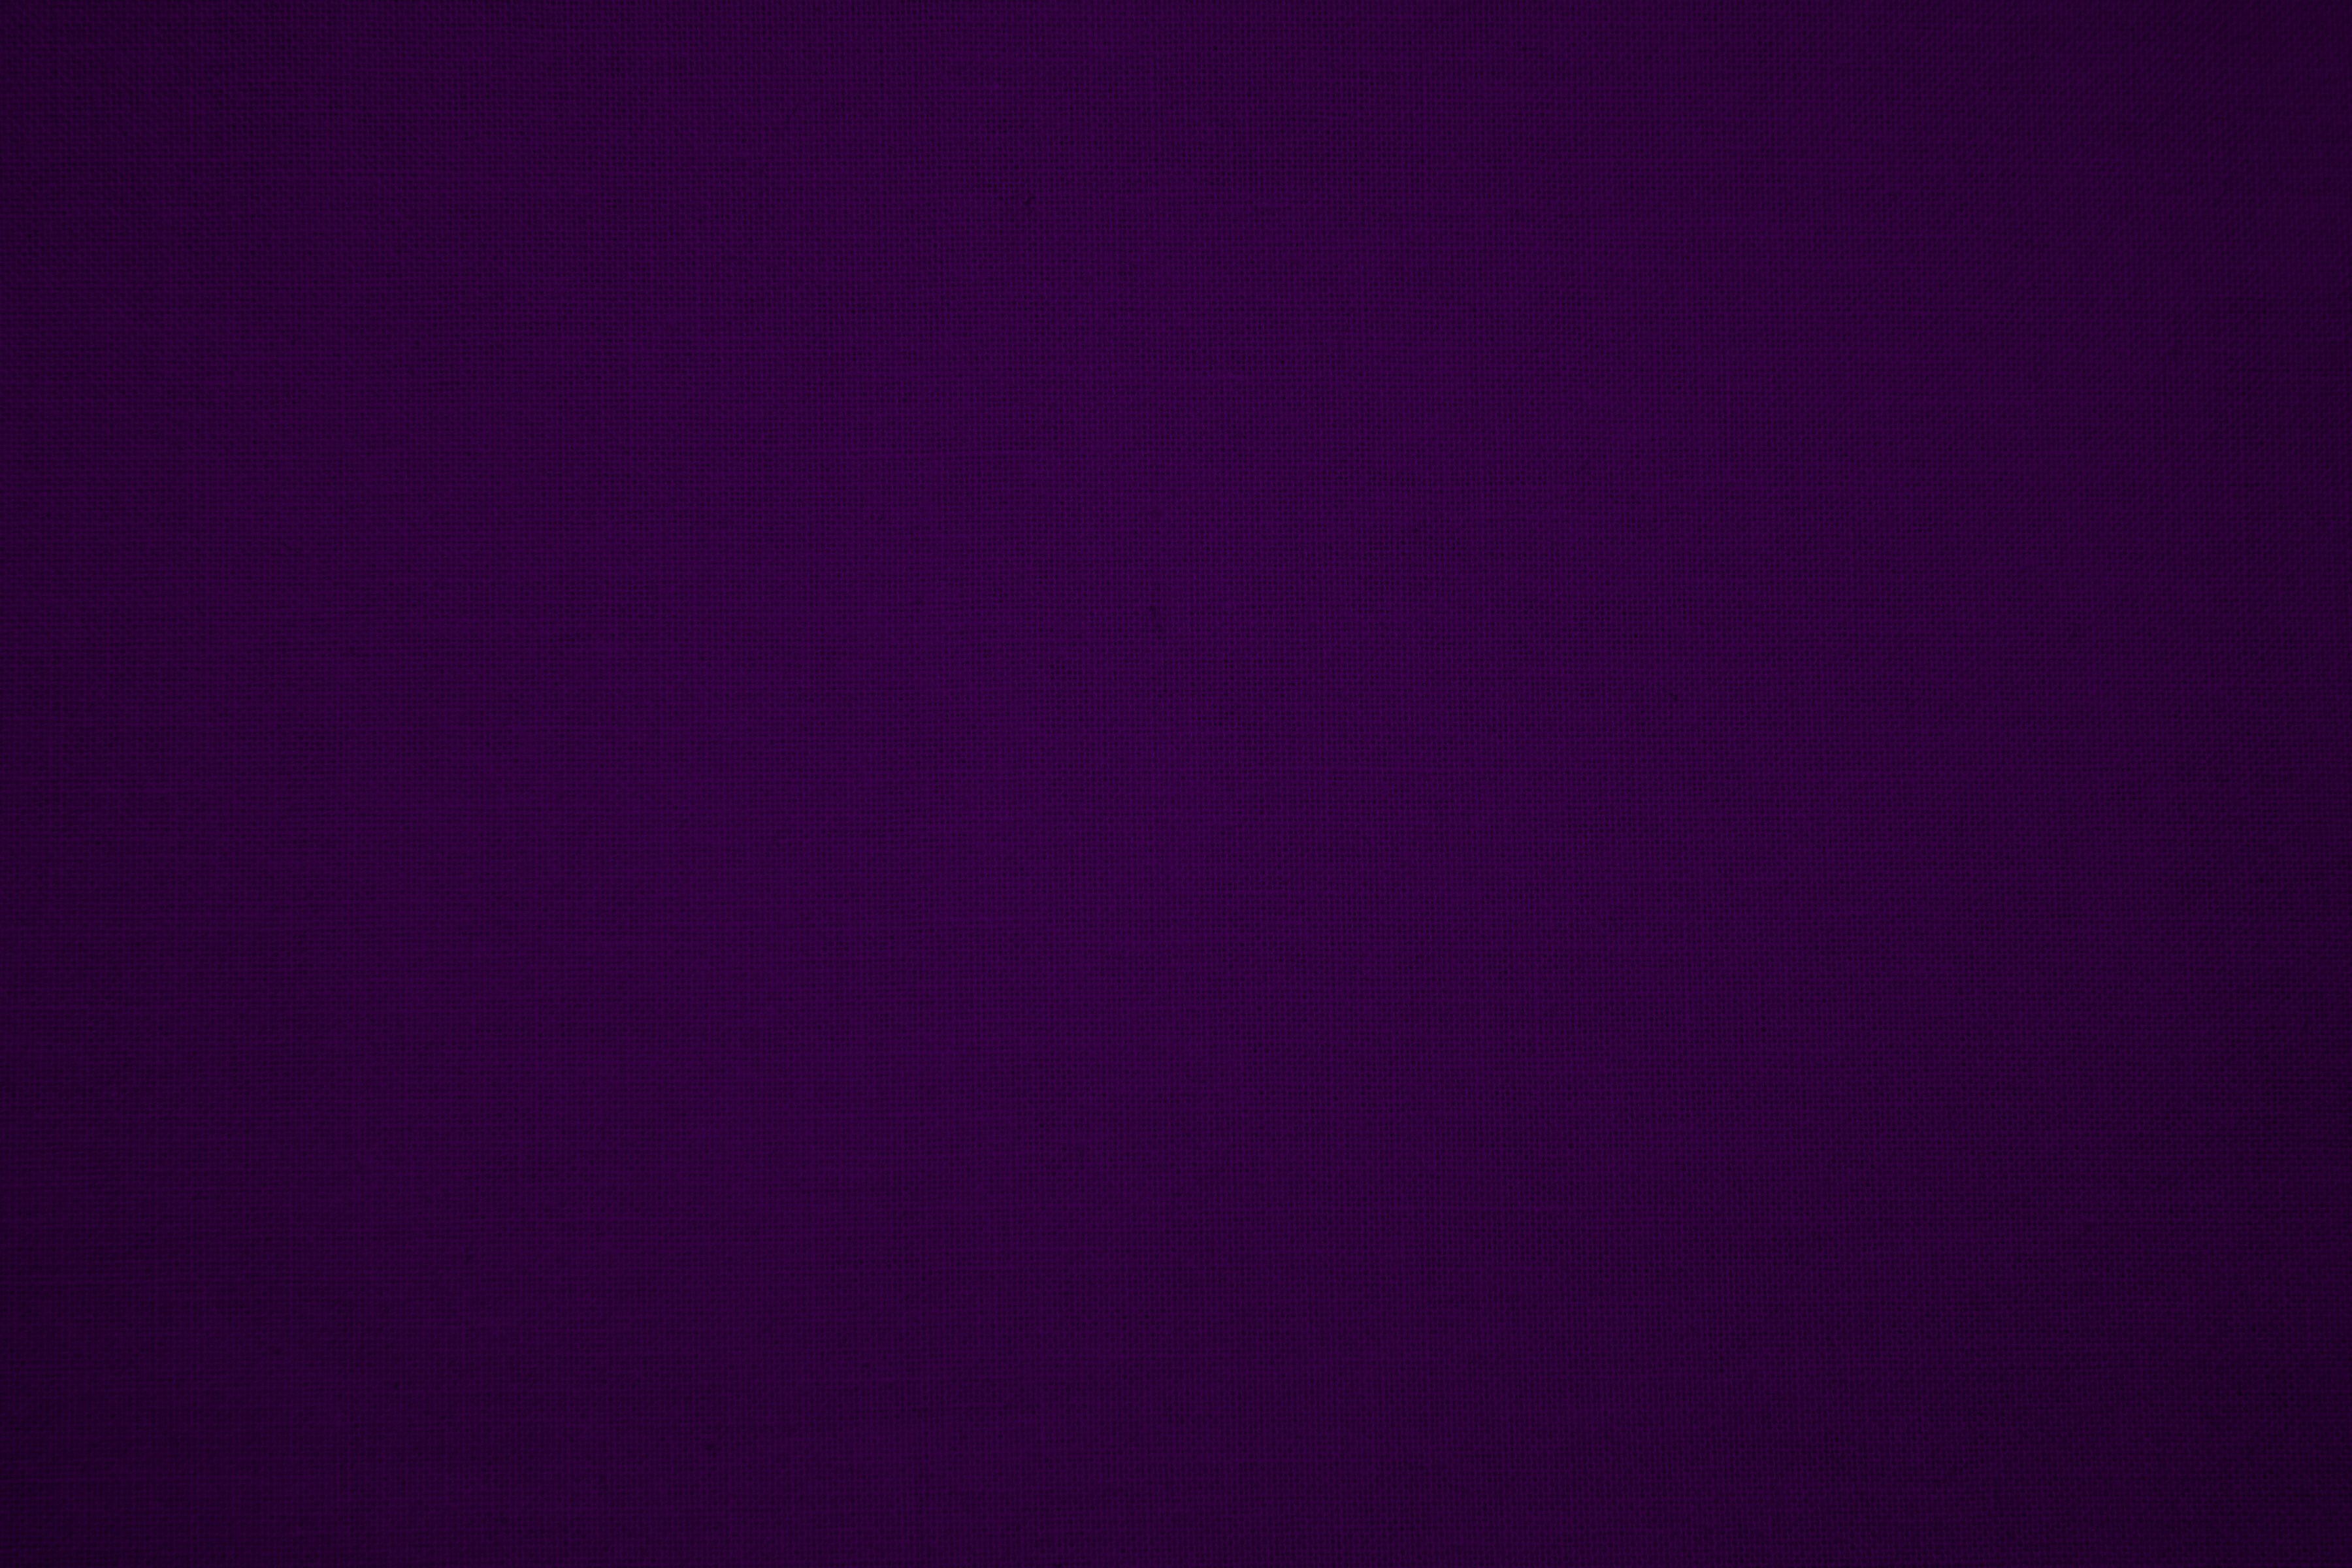 Wallpaper For Plain Dark Purple Background